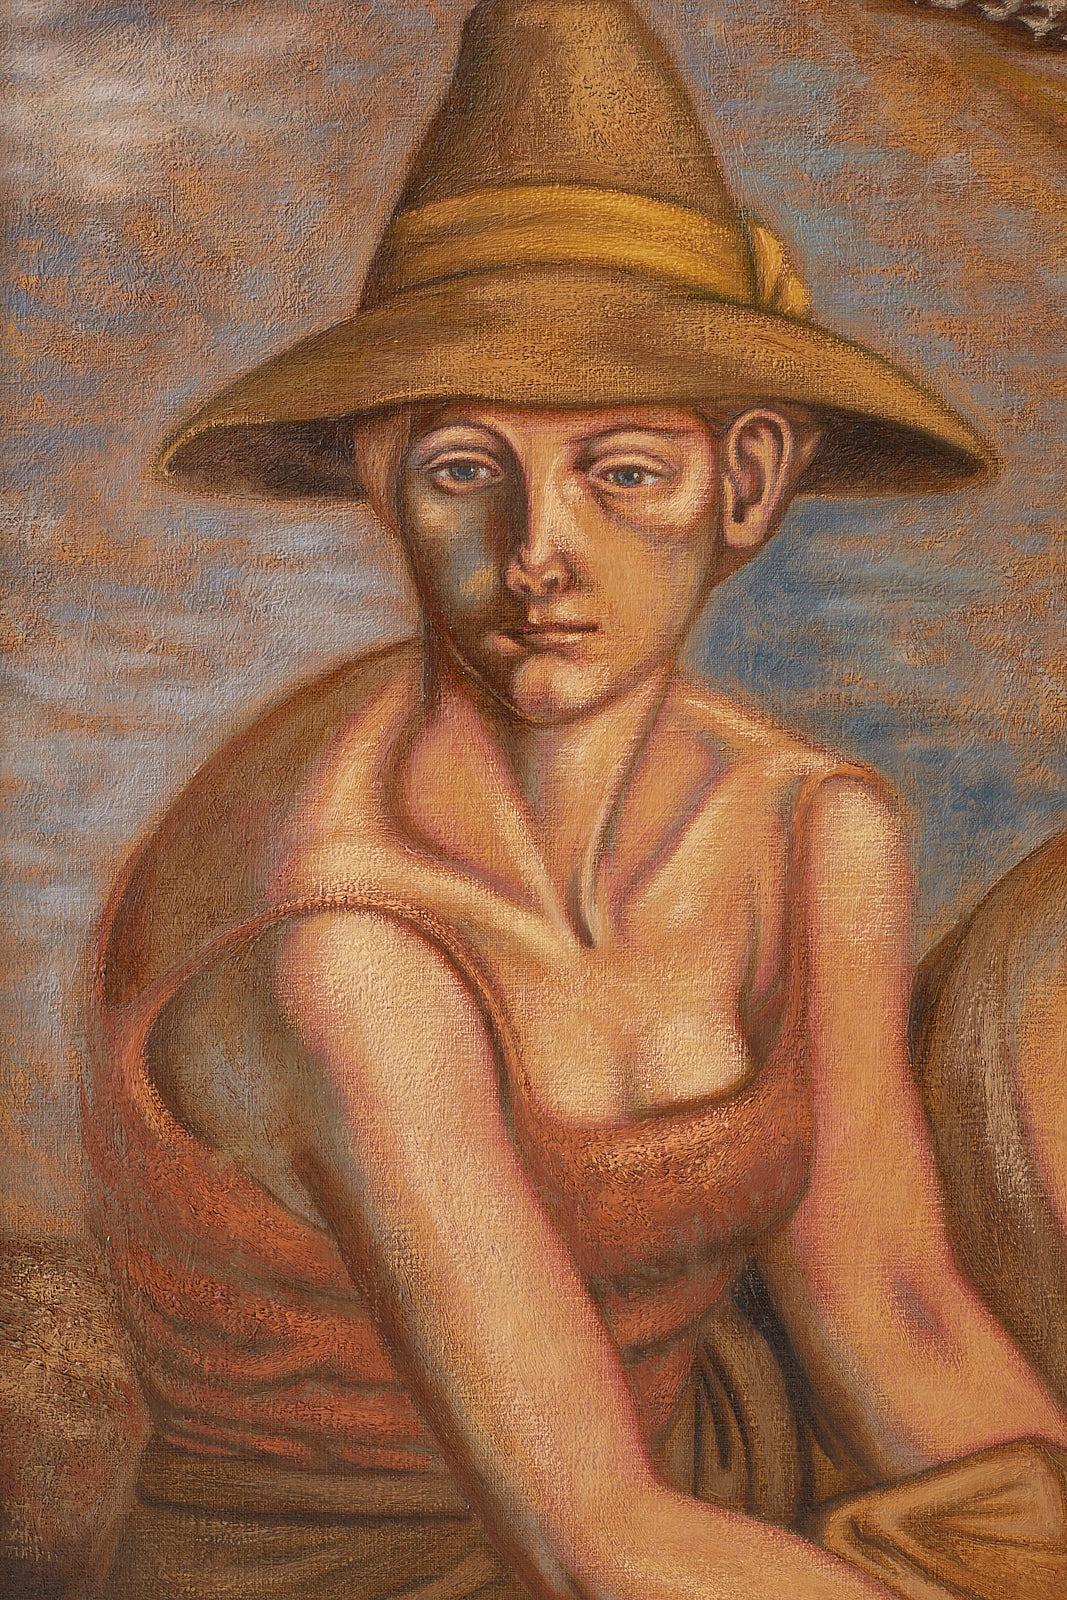 Faszinierendes figuratives Gemälde von Norbert Schlaus (Deutscher 1927-2009), das eine sitzende Frau mit Hut und Früchten darstellt. Schlaus wurde in Oberhausen, Deutschland, geboren und zog 1962 nach Kalifornien. Seine erstaunlichen Arbeiten